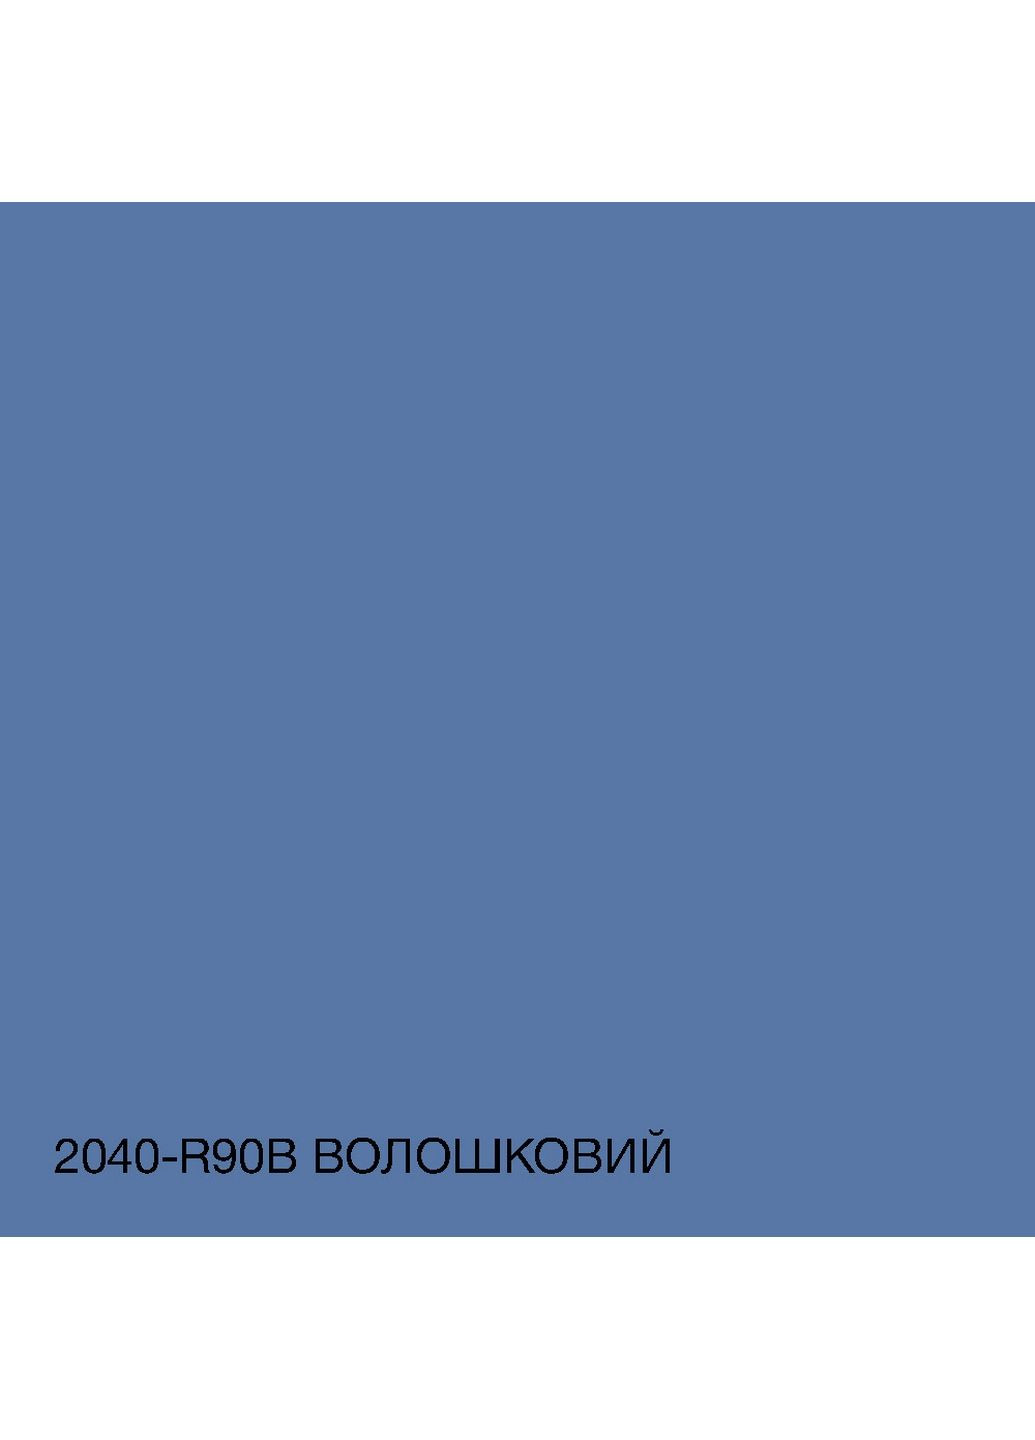 Интерьерная латексная краска 2040-R90B 5 л SkyLine (283326608)